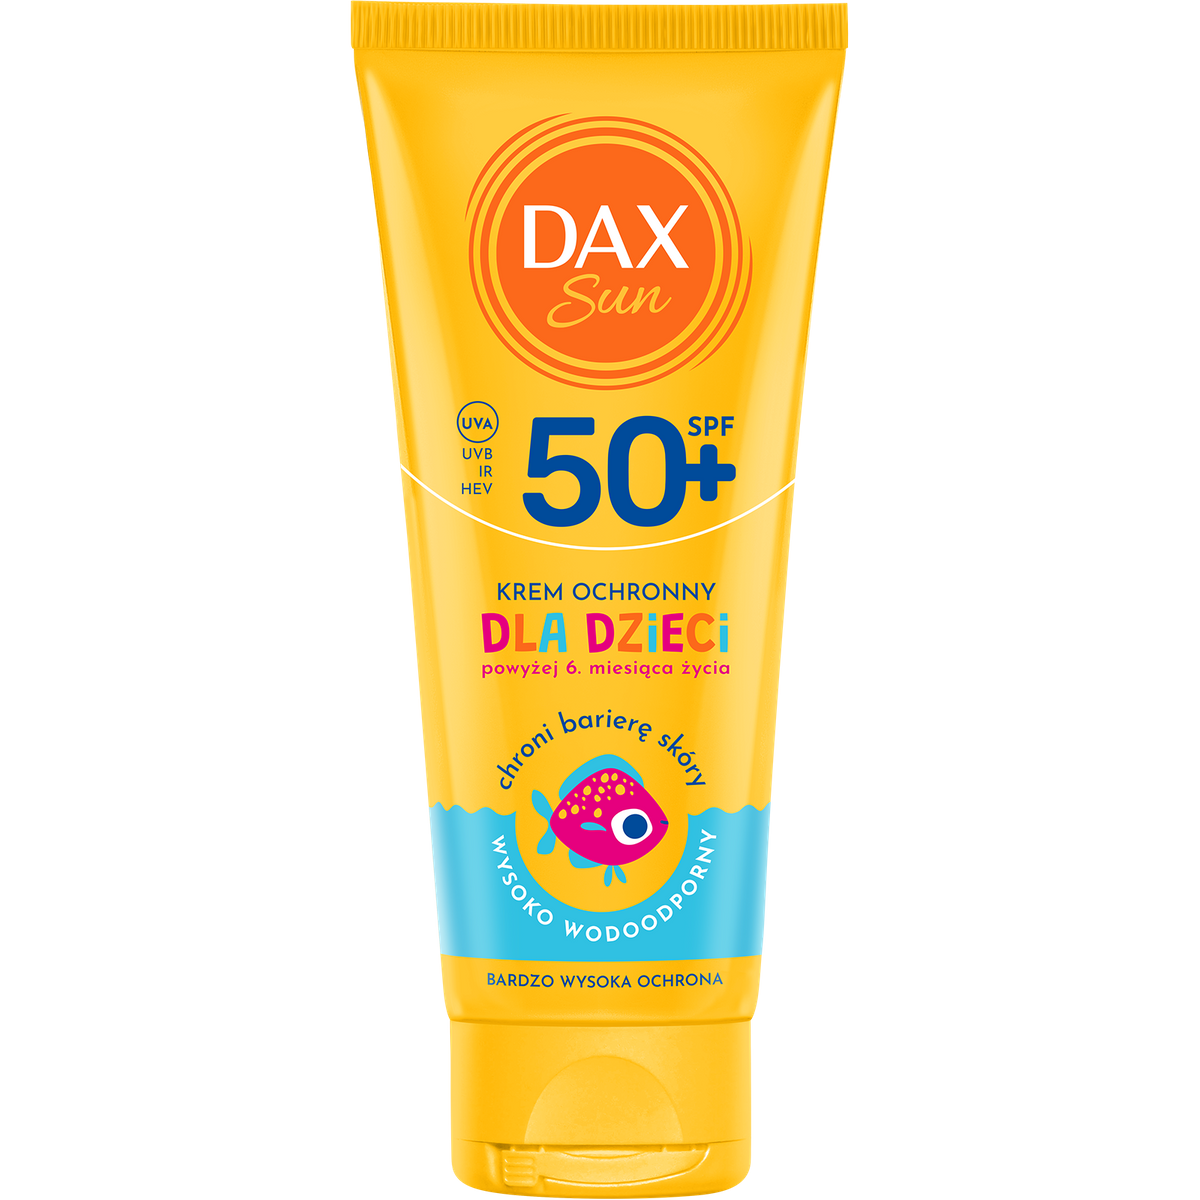 Dax Sun Krem ochronny dla dzieci SPF 50+